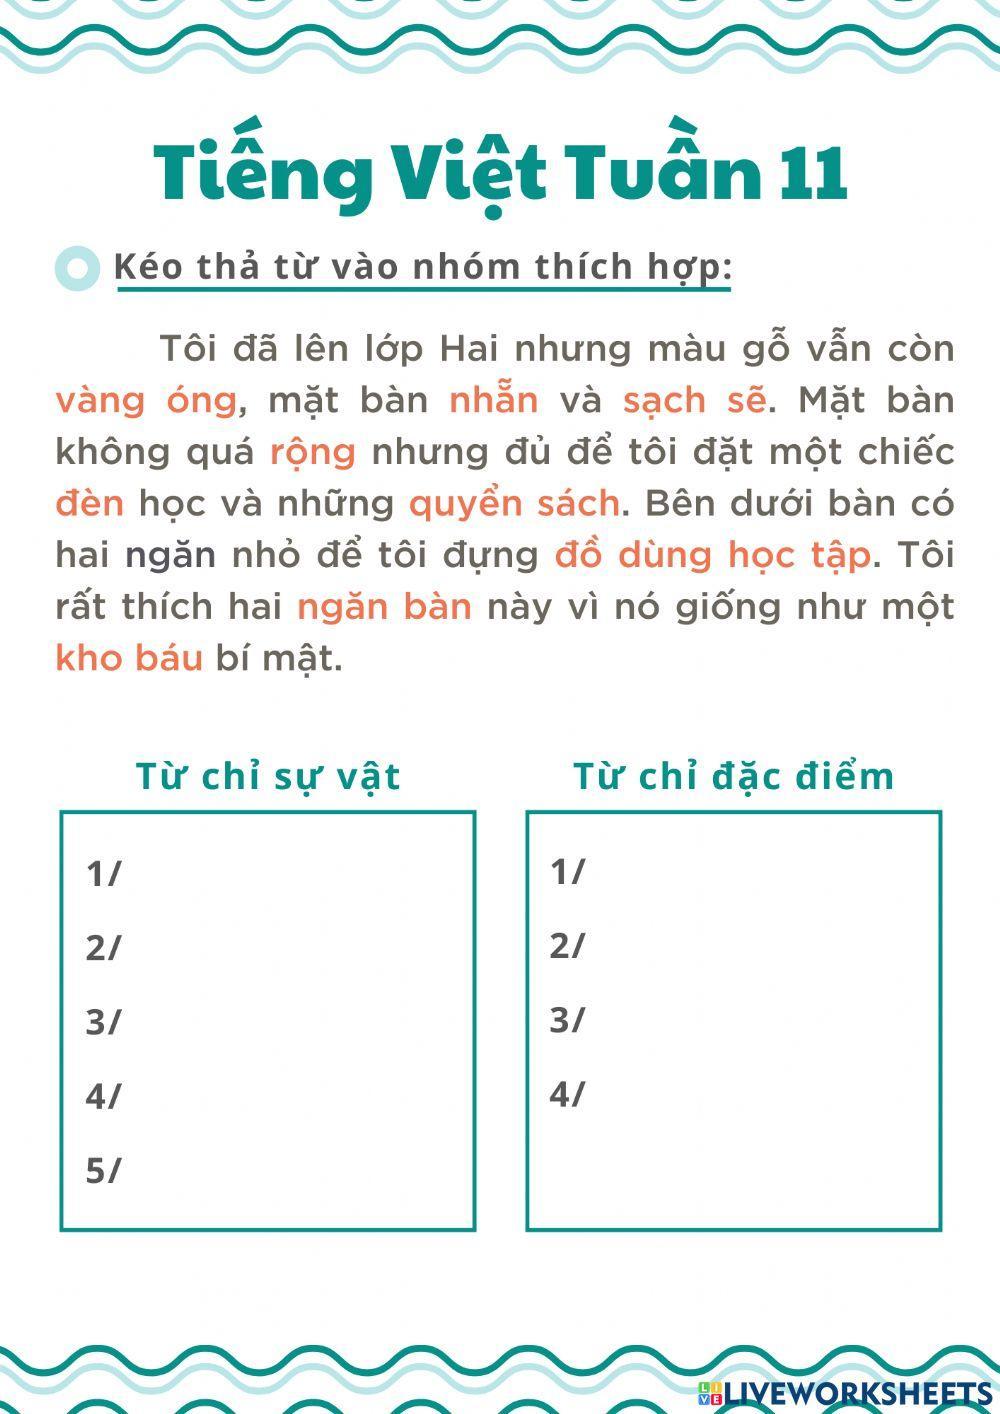 Tiếng Việt tuần 11